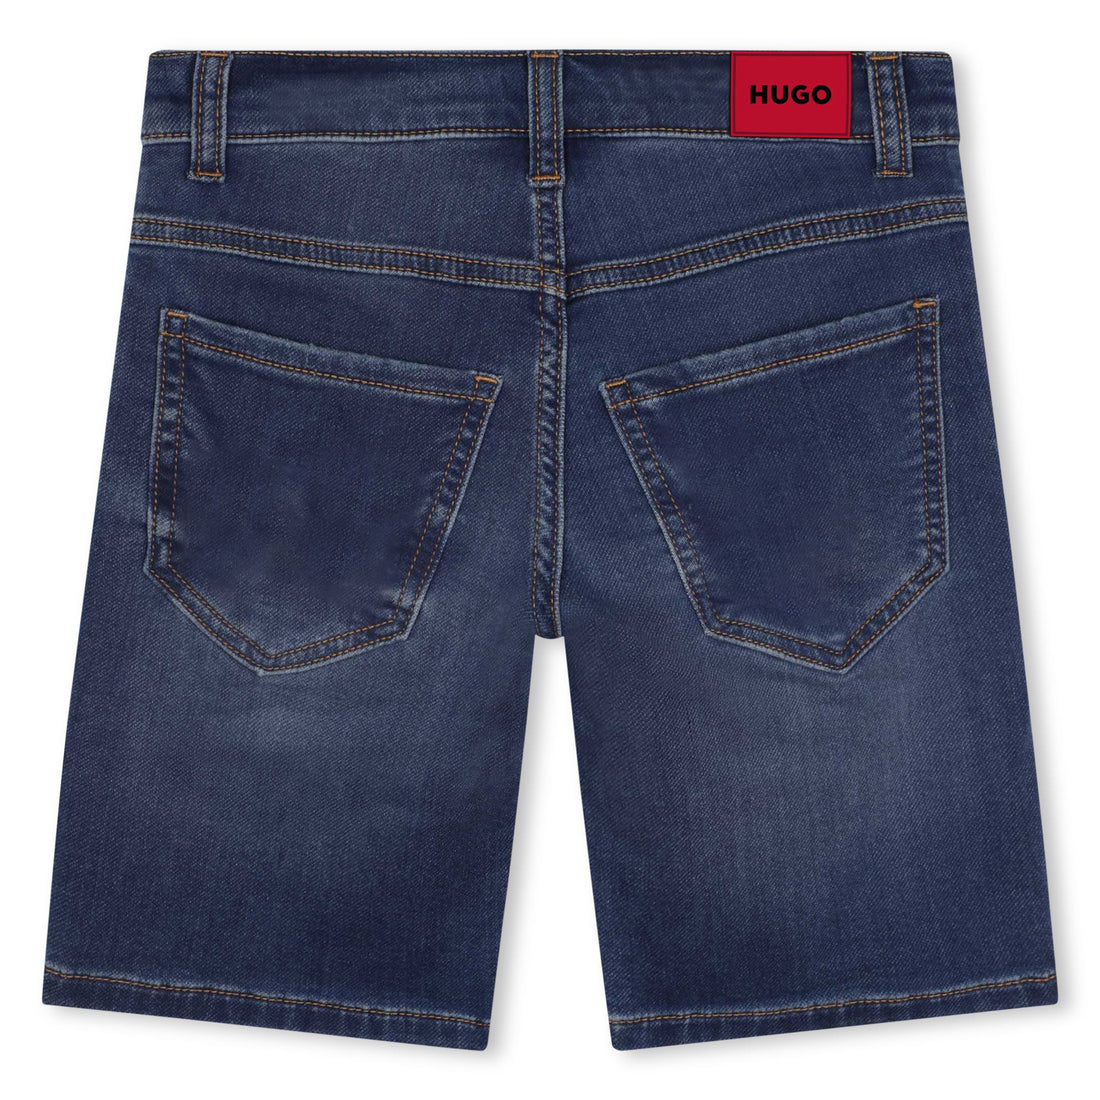 Hugo Denim Shorts Style: G24105